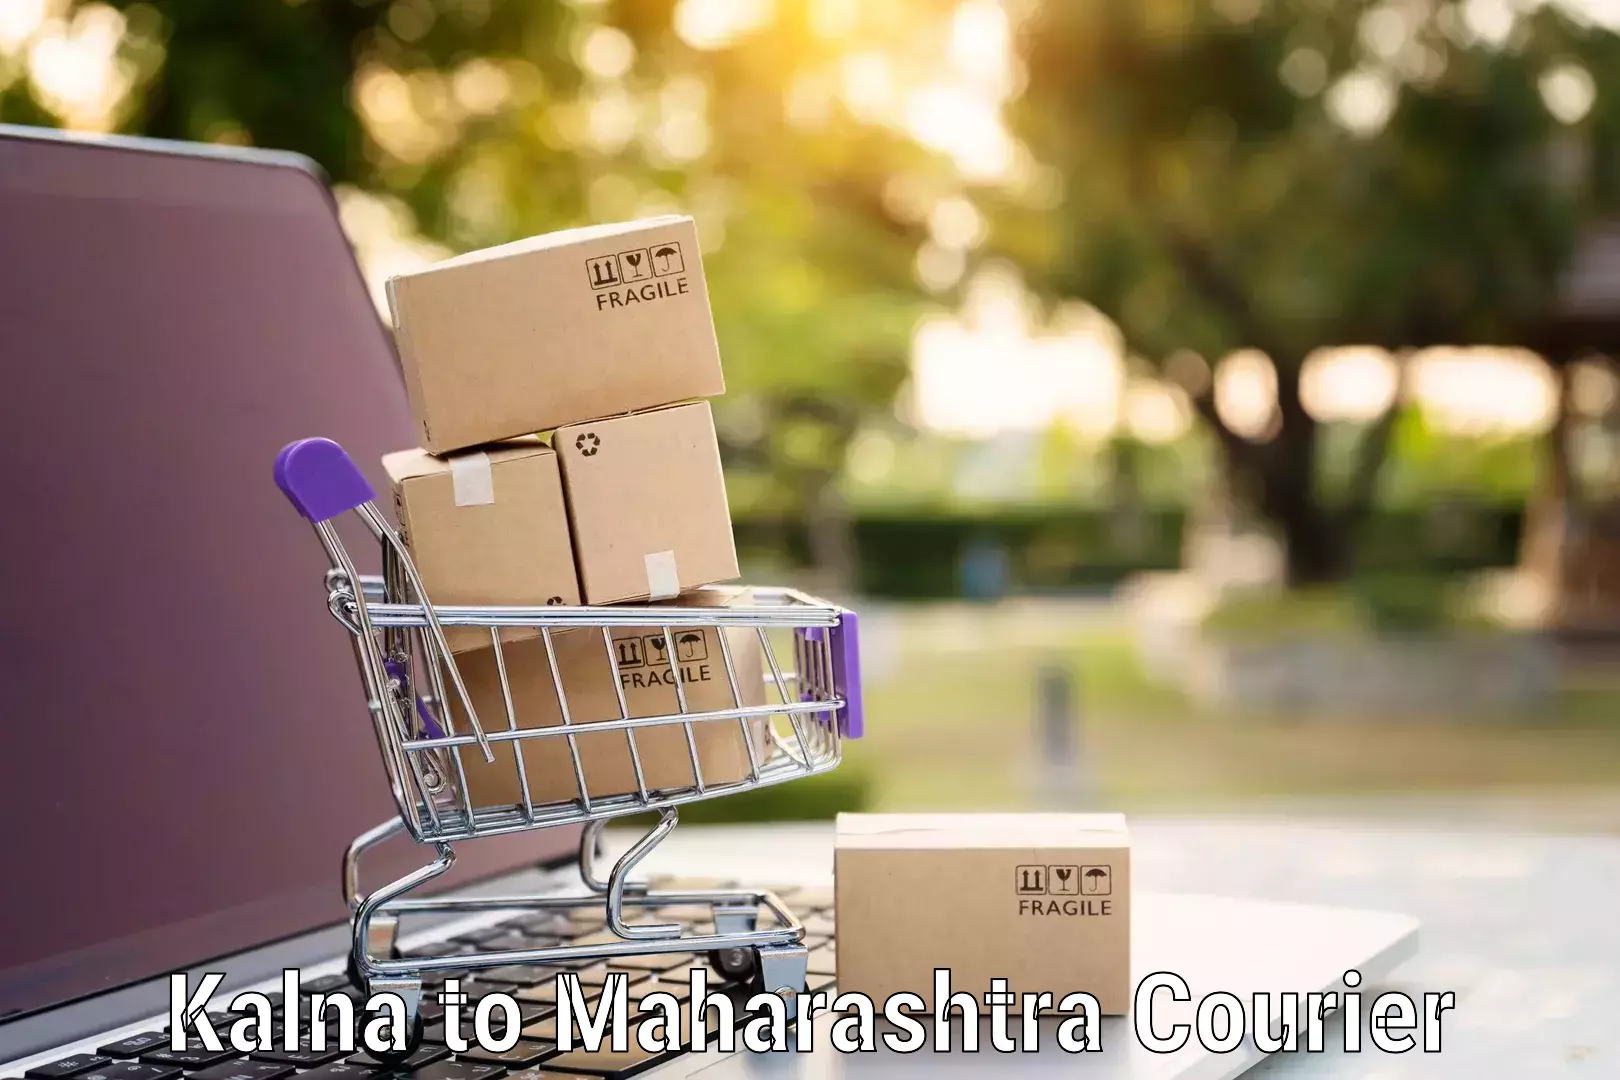 Furniture transport experts Kalna to Maharashtra